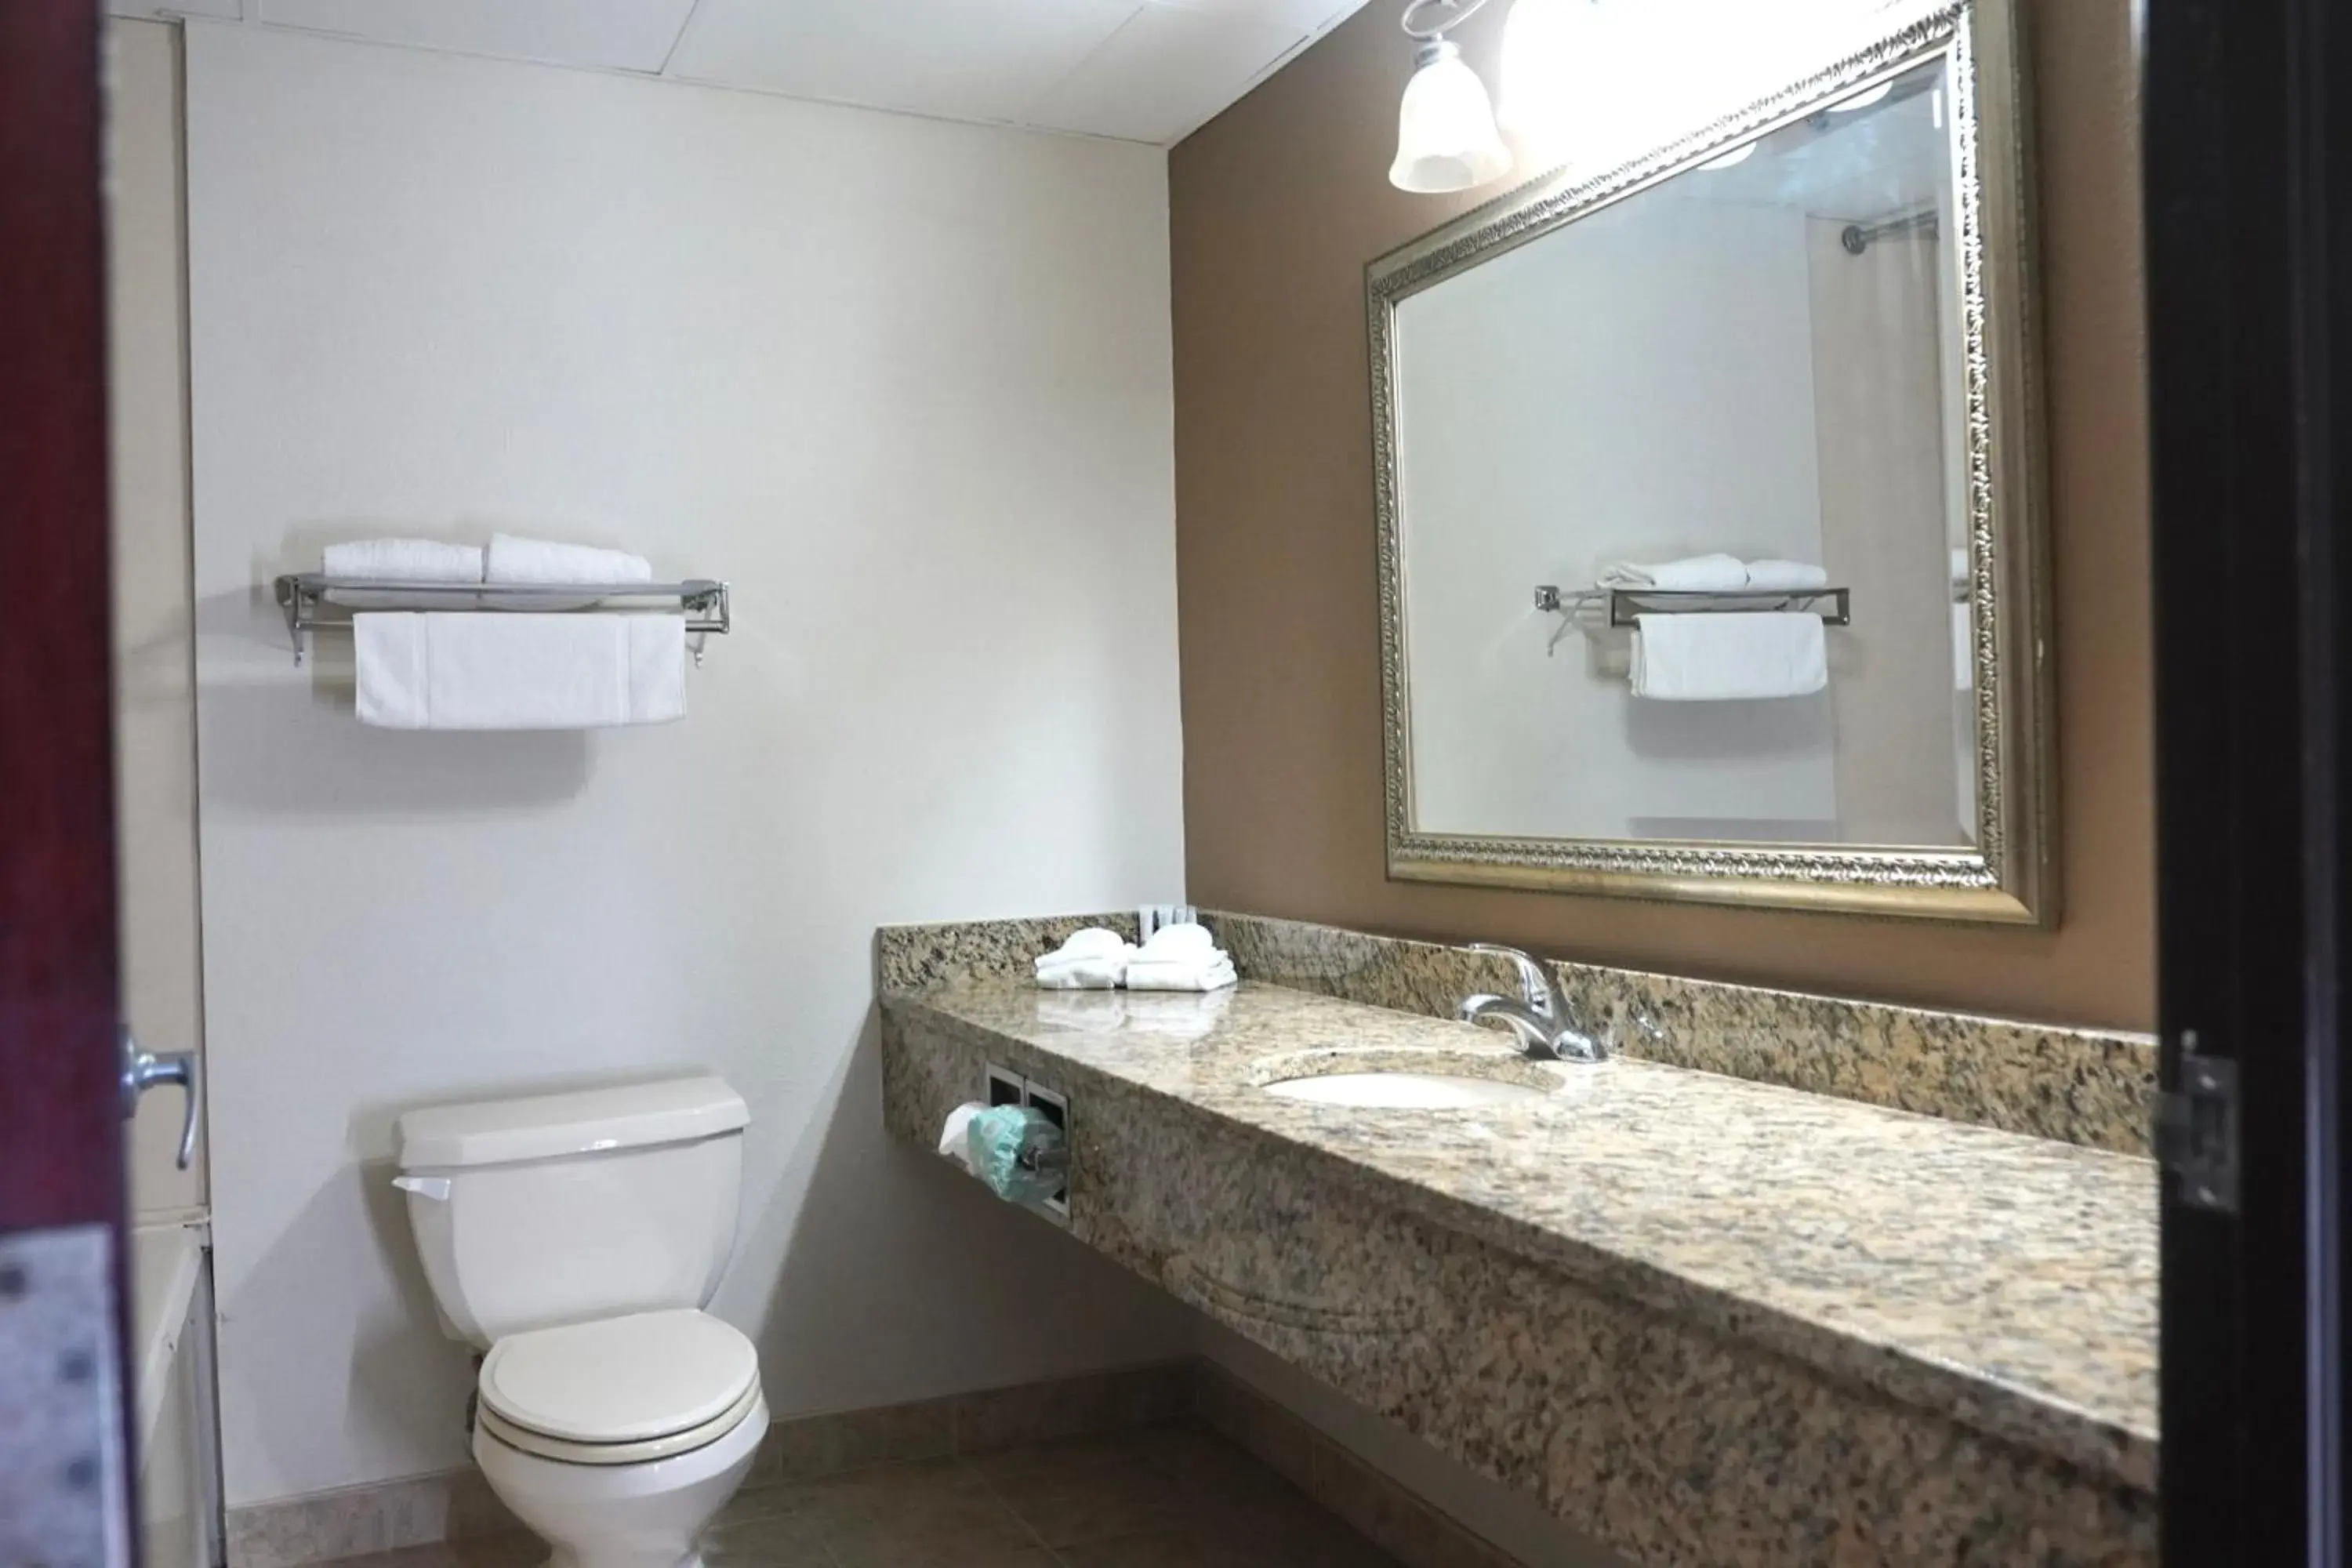 Toilet, Bathroom in American Inn & Suites